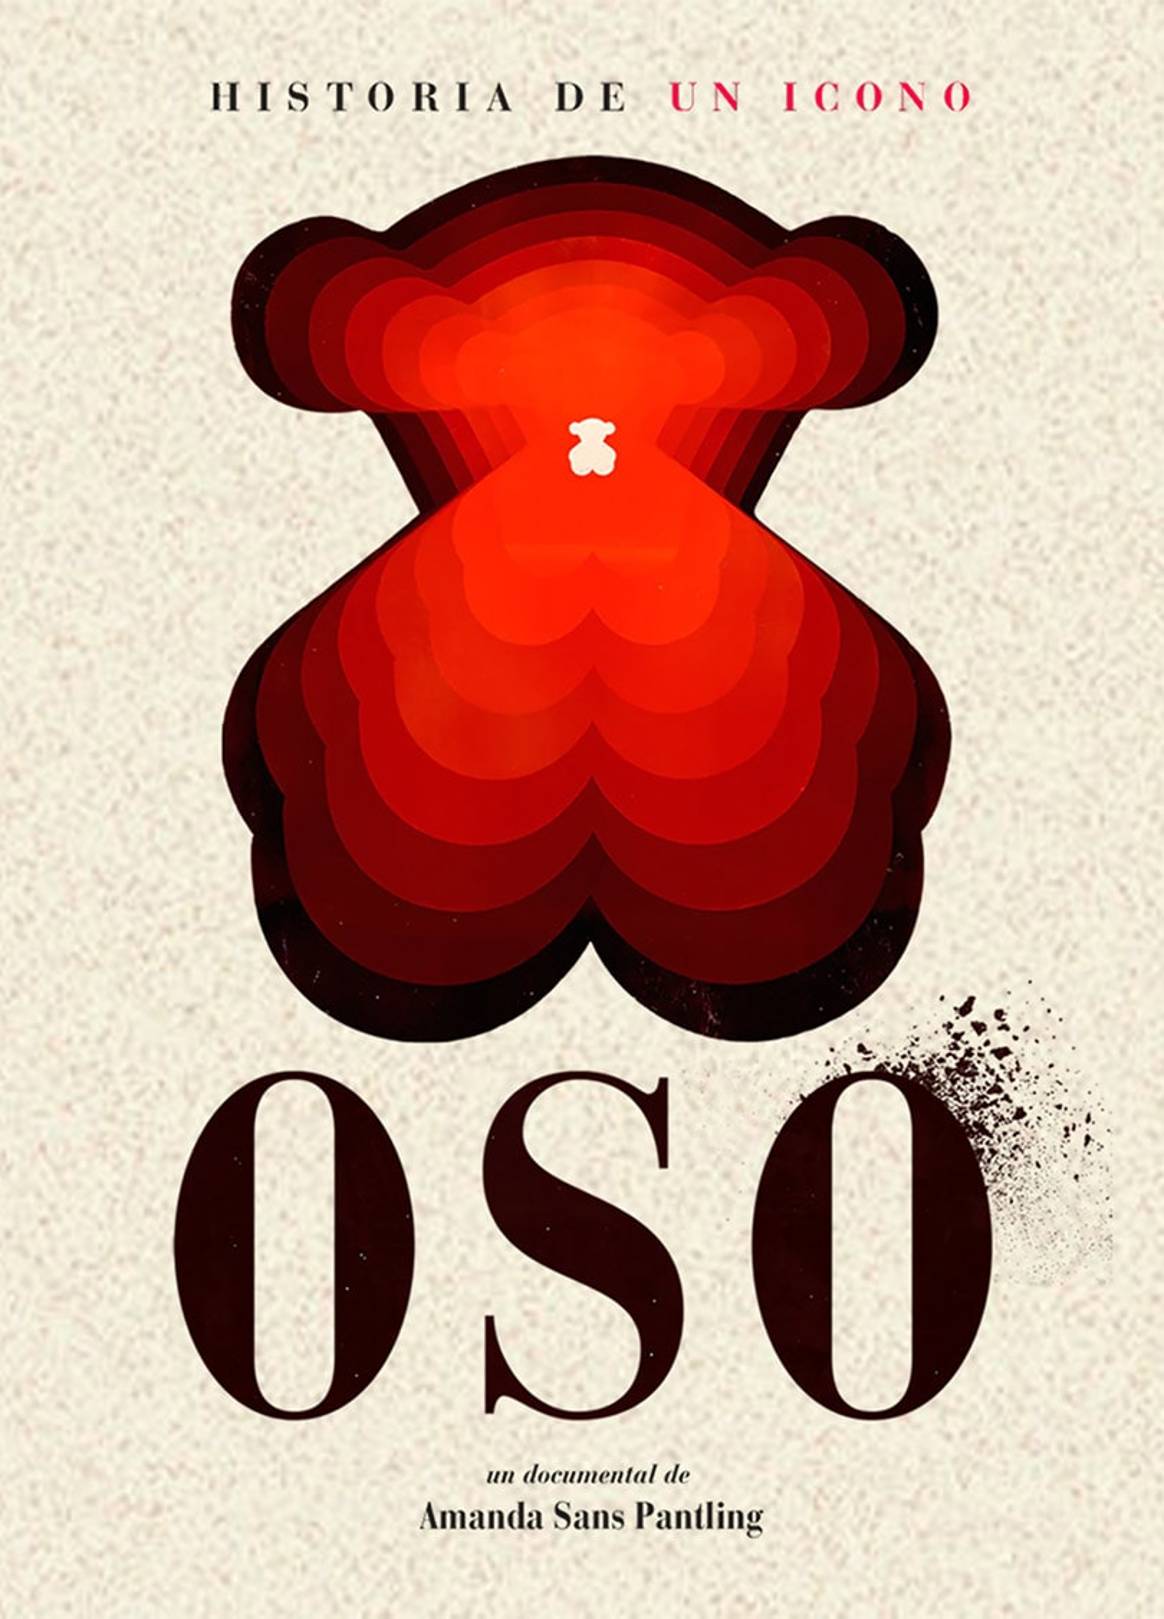 Tous celebra sus 100 años de historia estrenando en Amazon Prime su documental “OSO”